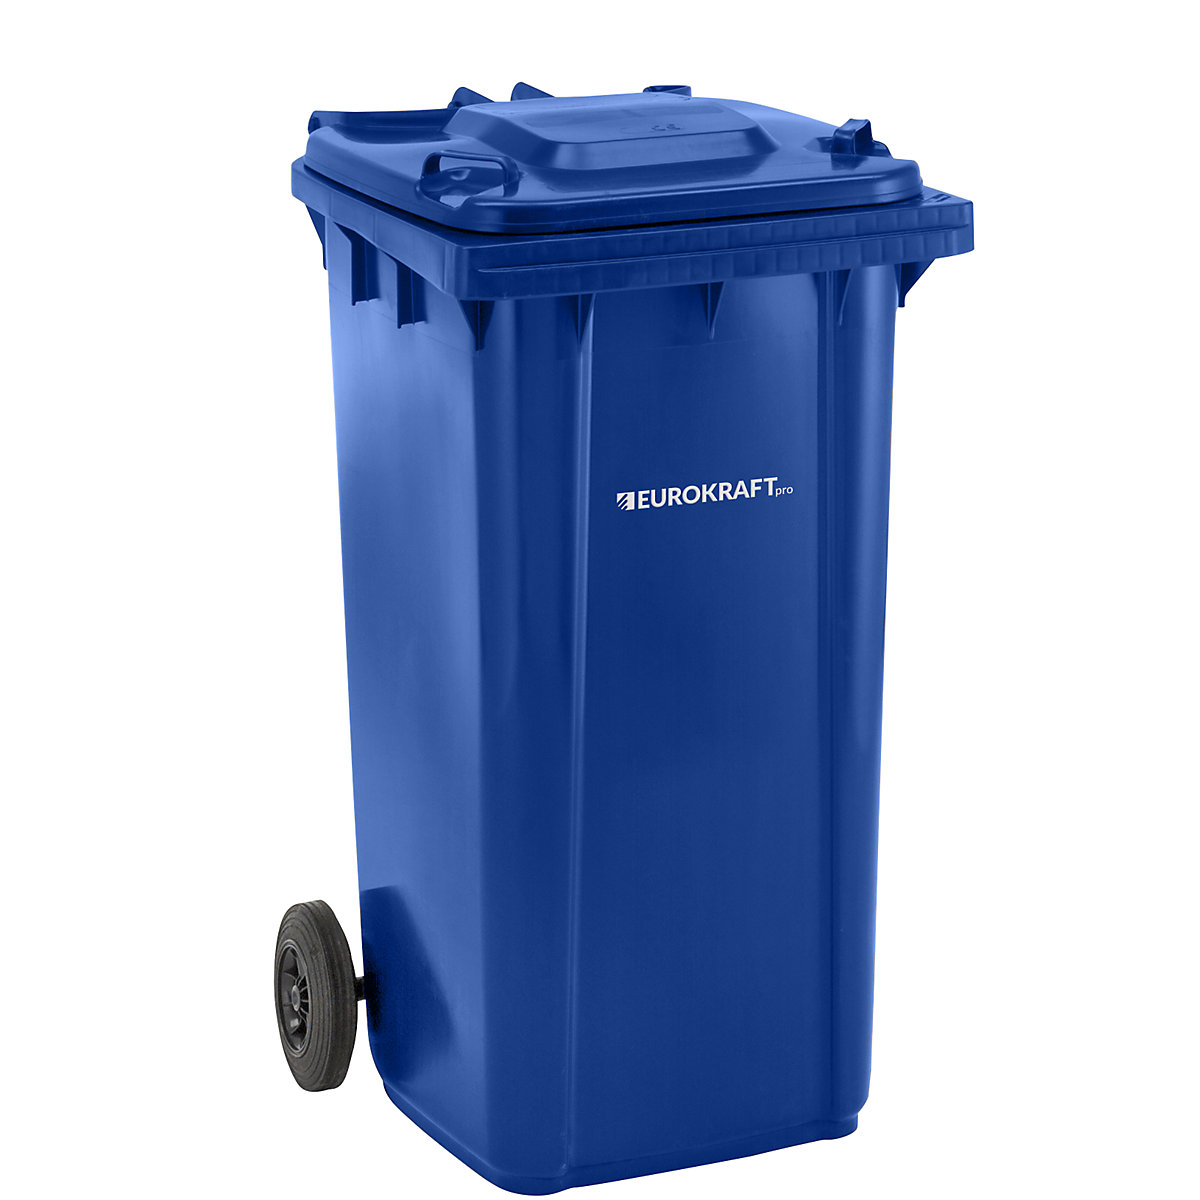 DIN EN 840 szabvány szerinti hulladékgyűjtő – eurokraft pro, űrtartalom 240 l, szé x ma x mé 580 x 1100 x 740 mm, kék-5